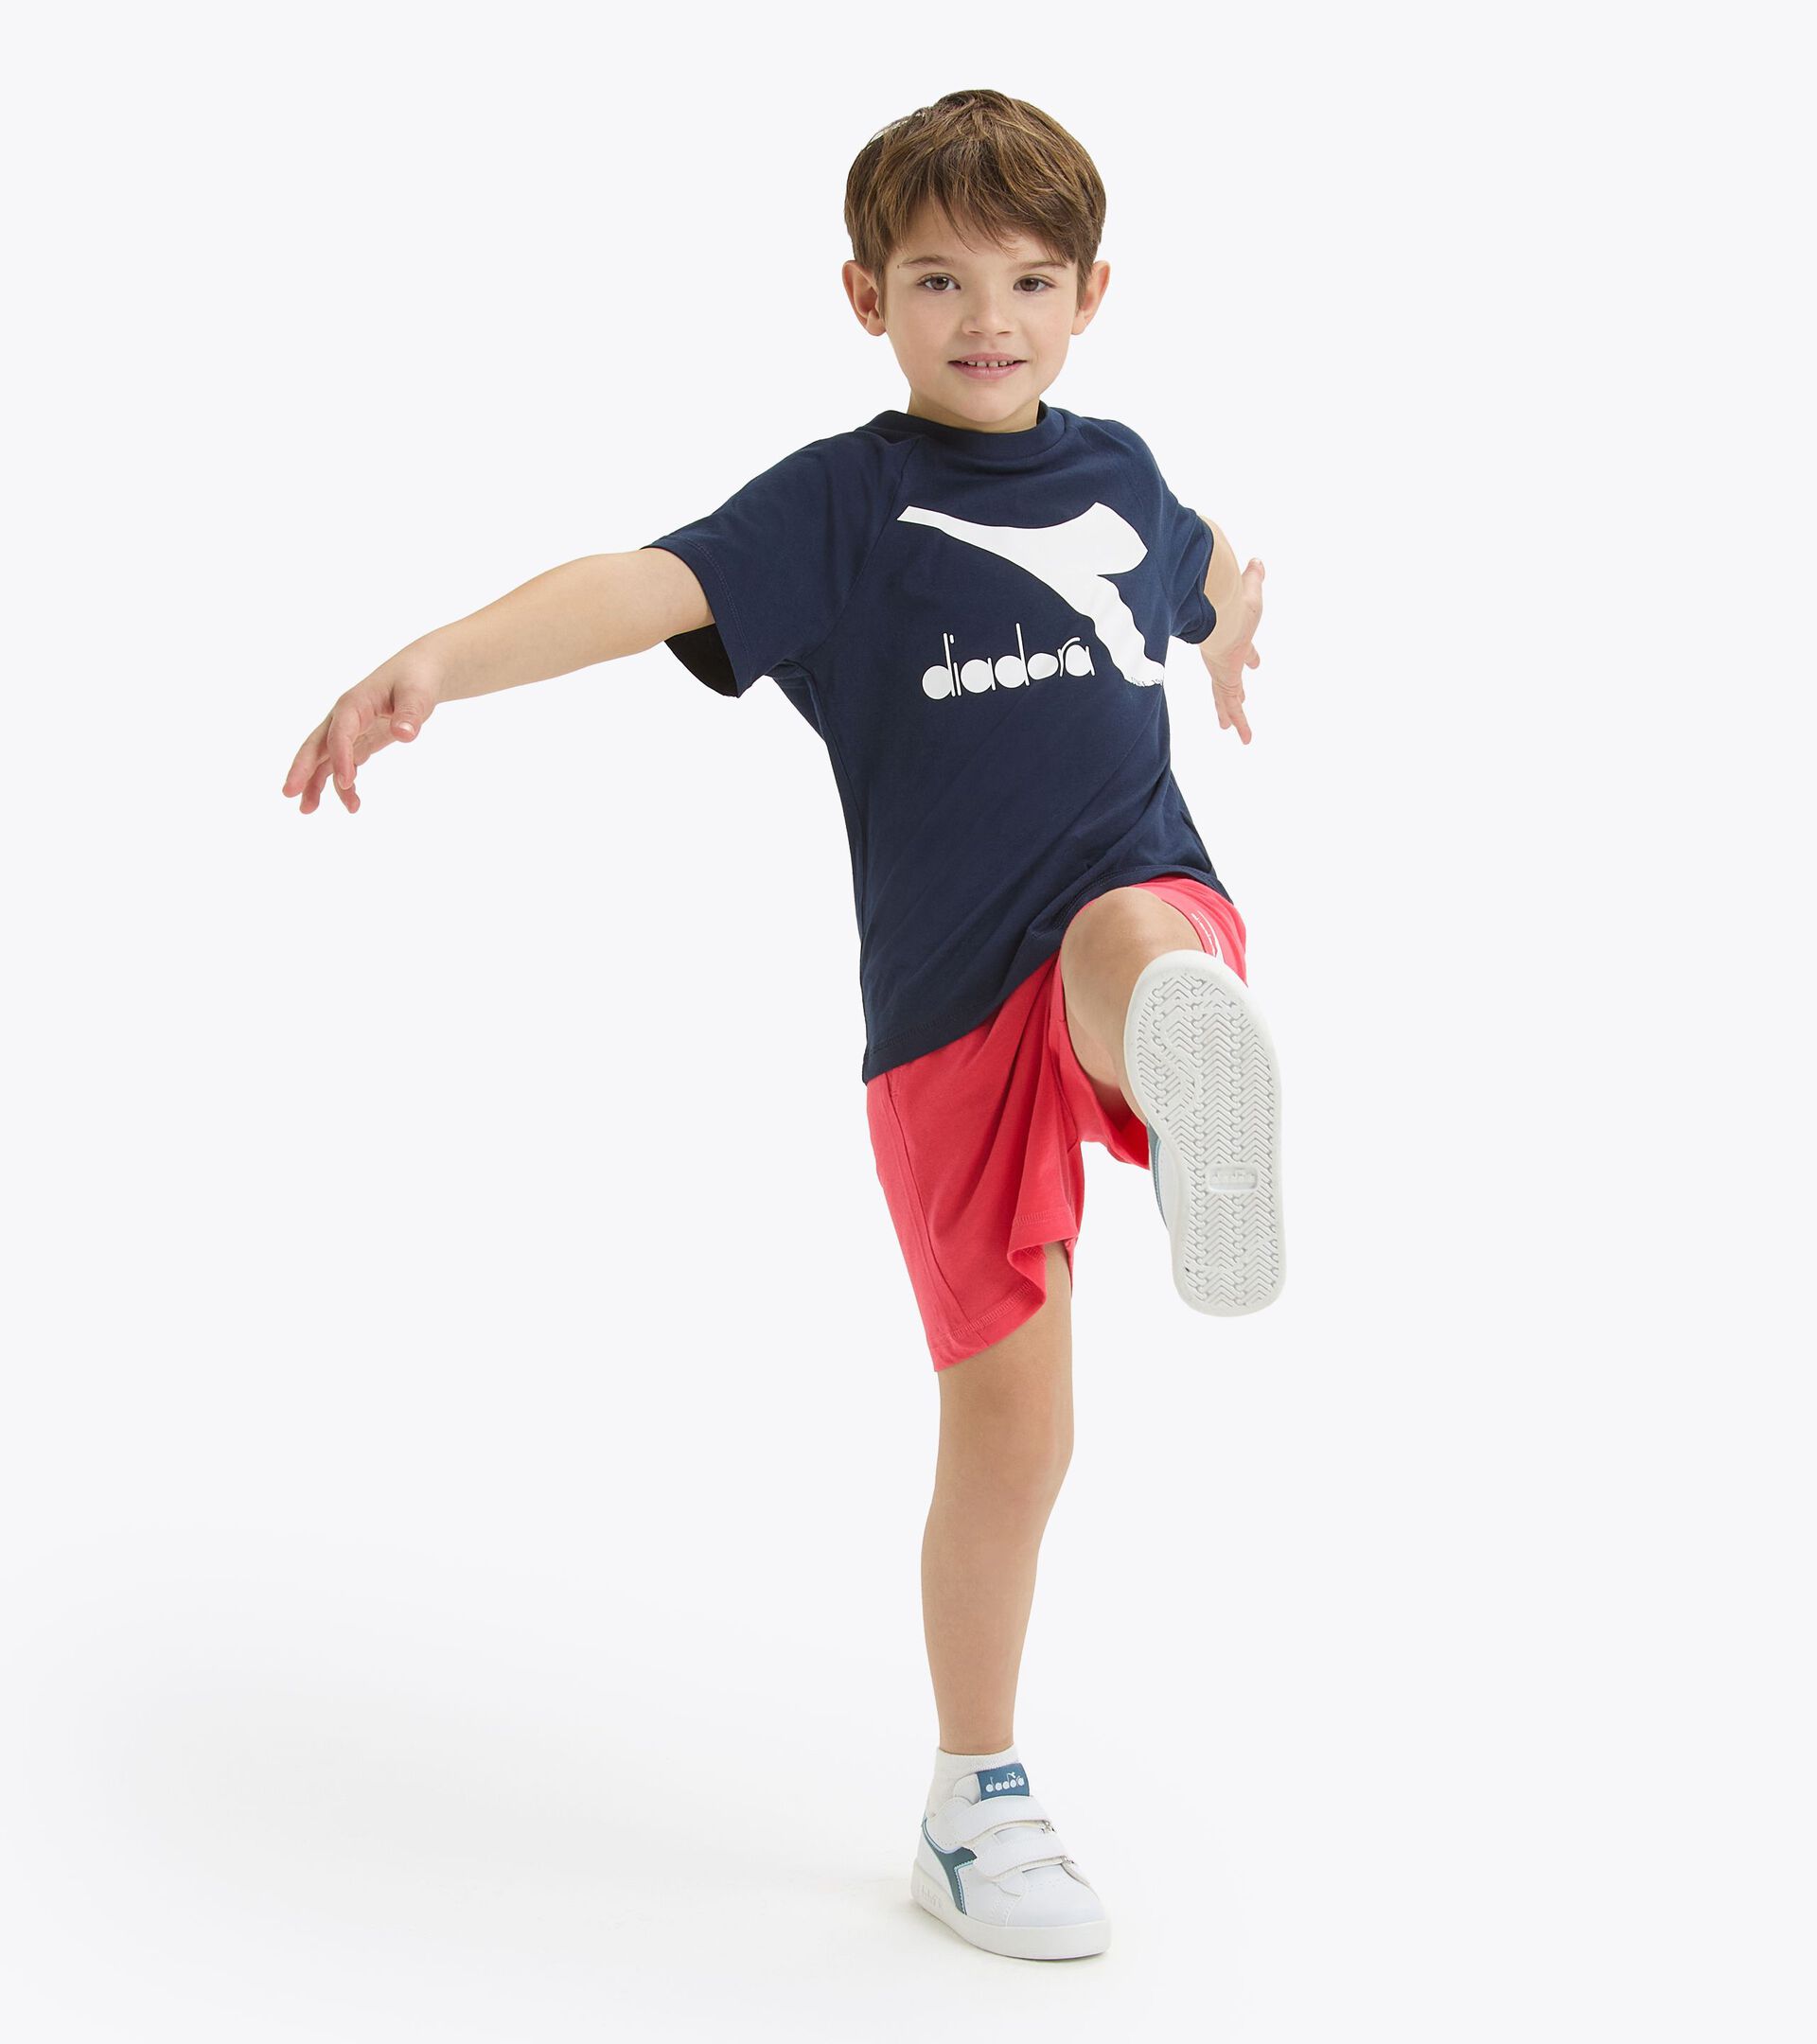 Conjunto deportivo - Camiseta y pantalones cortos - Unisex - Niños/niñas y adolescentes JU. SET SS CORE AZUL CHAQUETON - Diadora